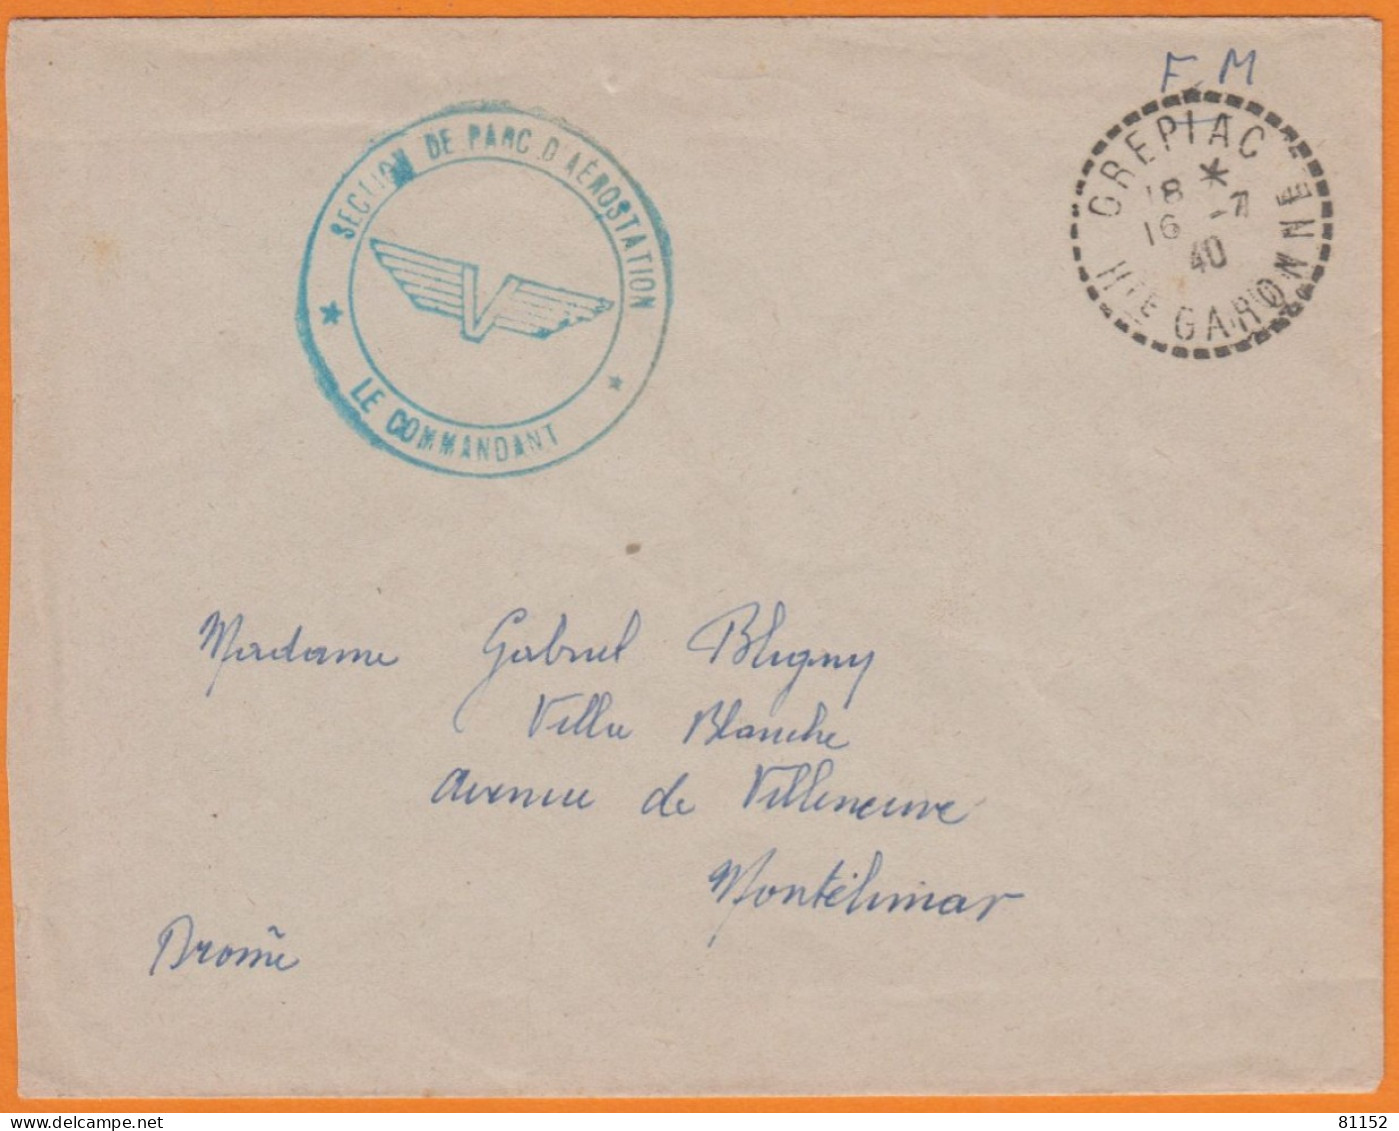 Lettre De CREPIAC Hte-Garonne Le 16-7-1940 En FM Cachet " SECTION DE PARC D'AEROSTATION  Le Commandant " Pour MONTELIMAR - WW II